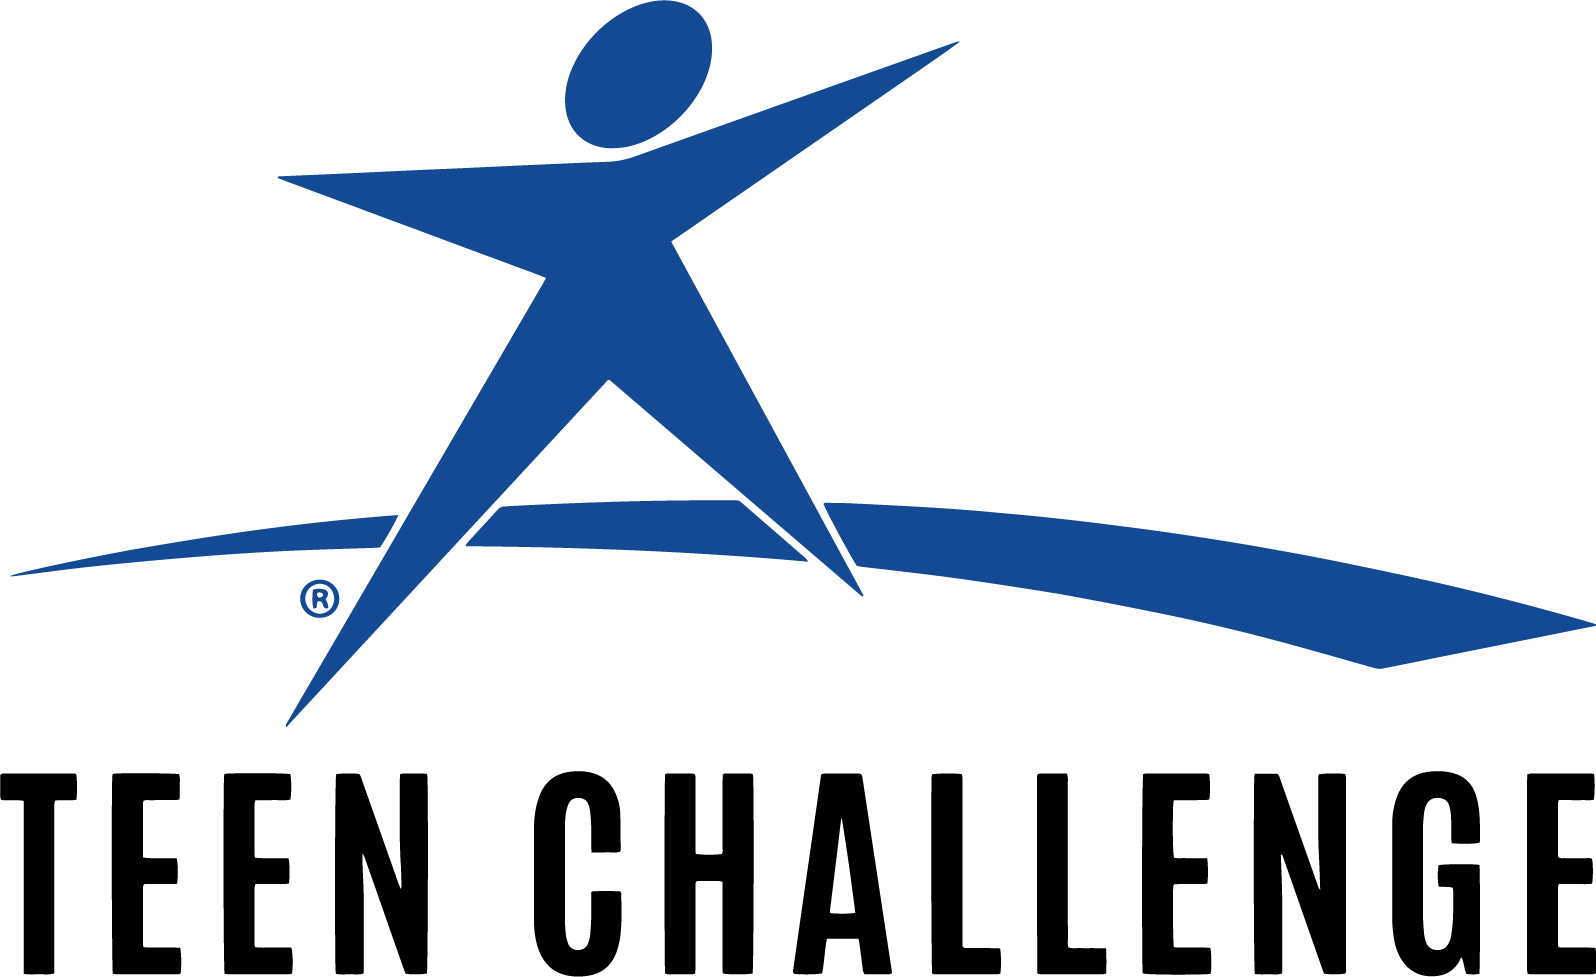 Teen Challenge.png